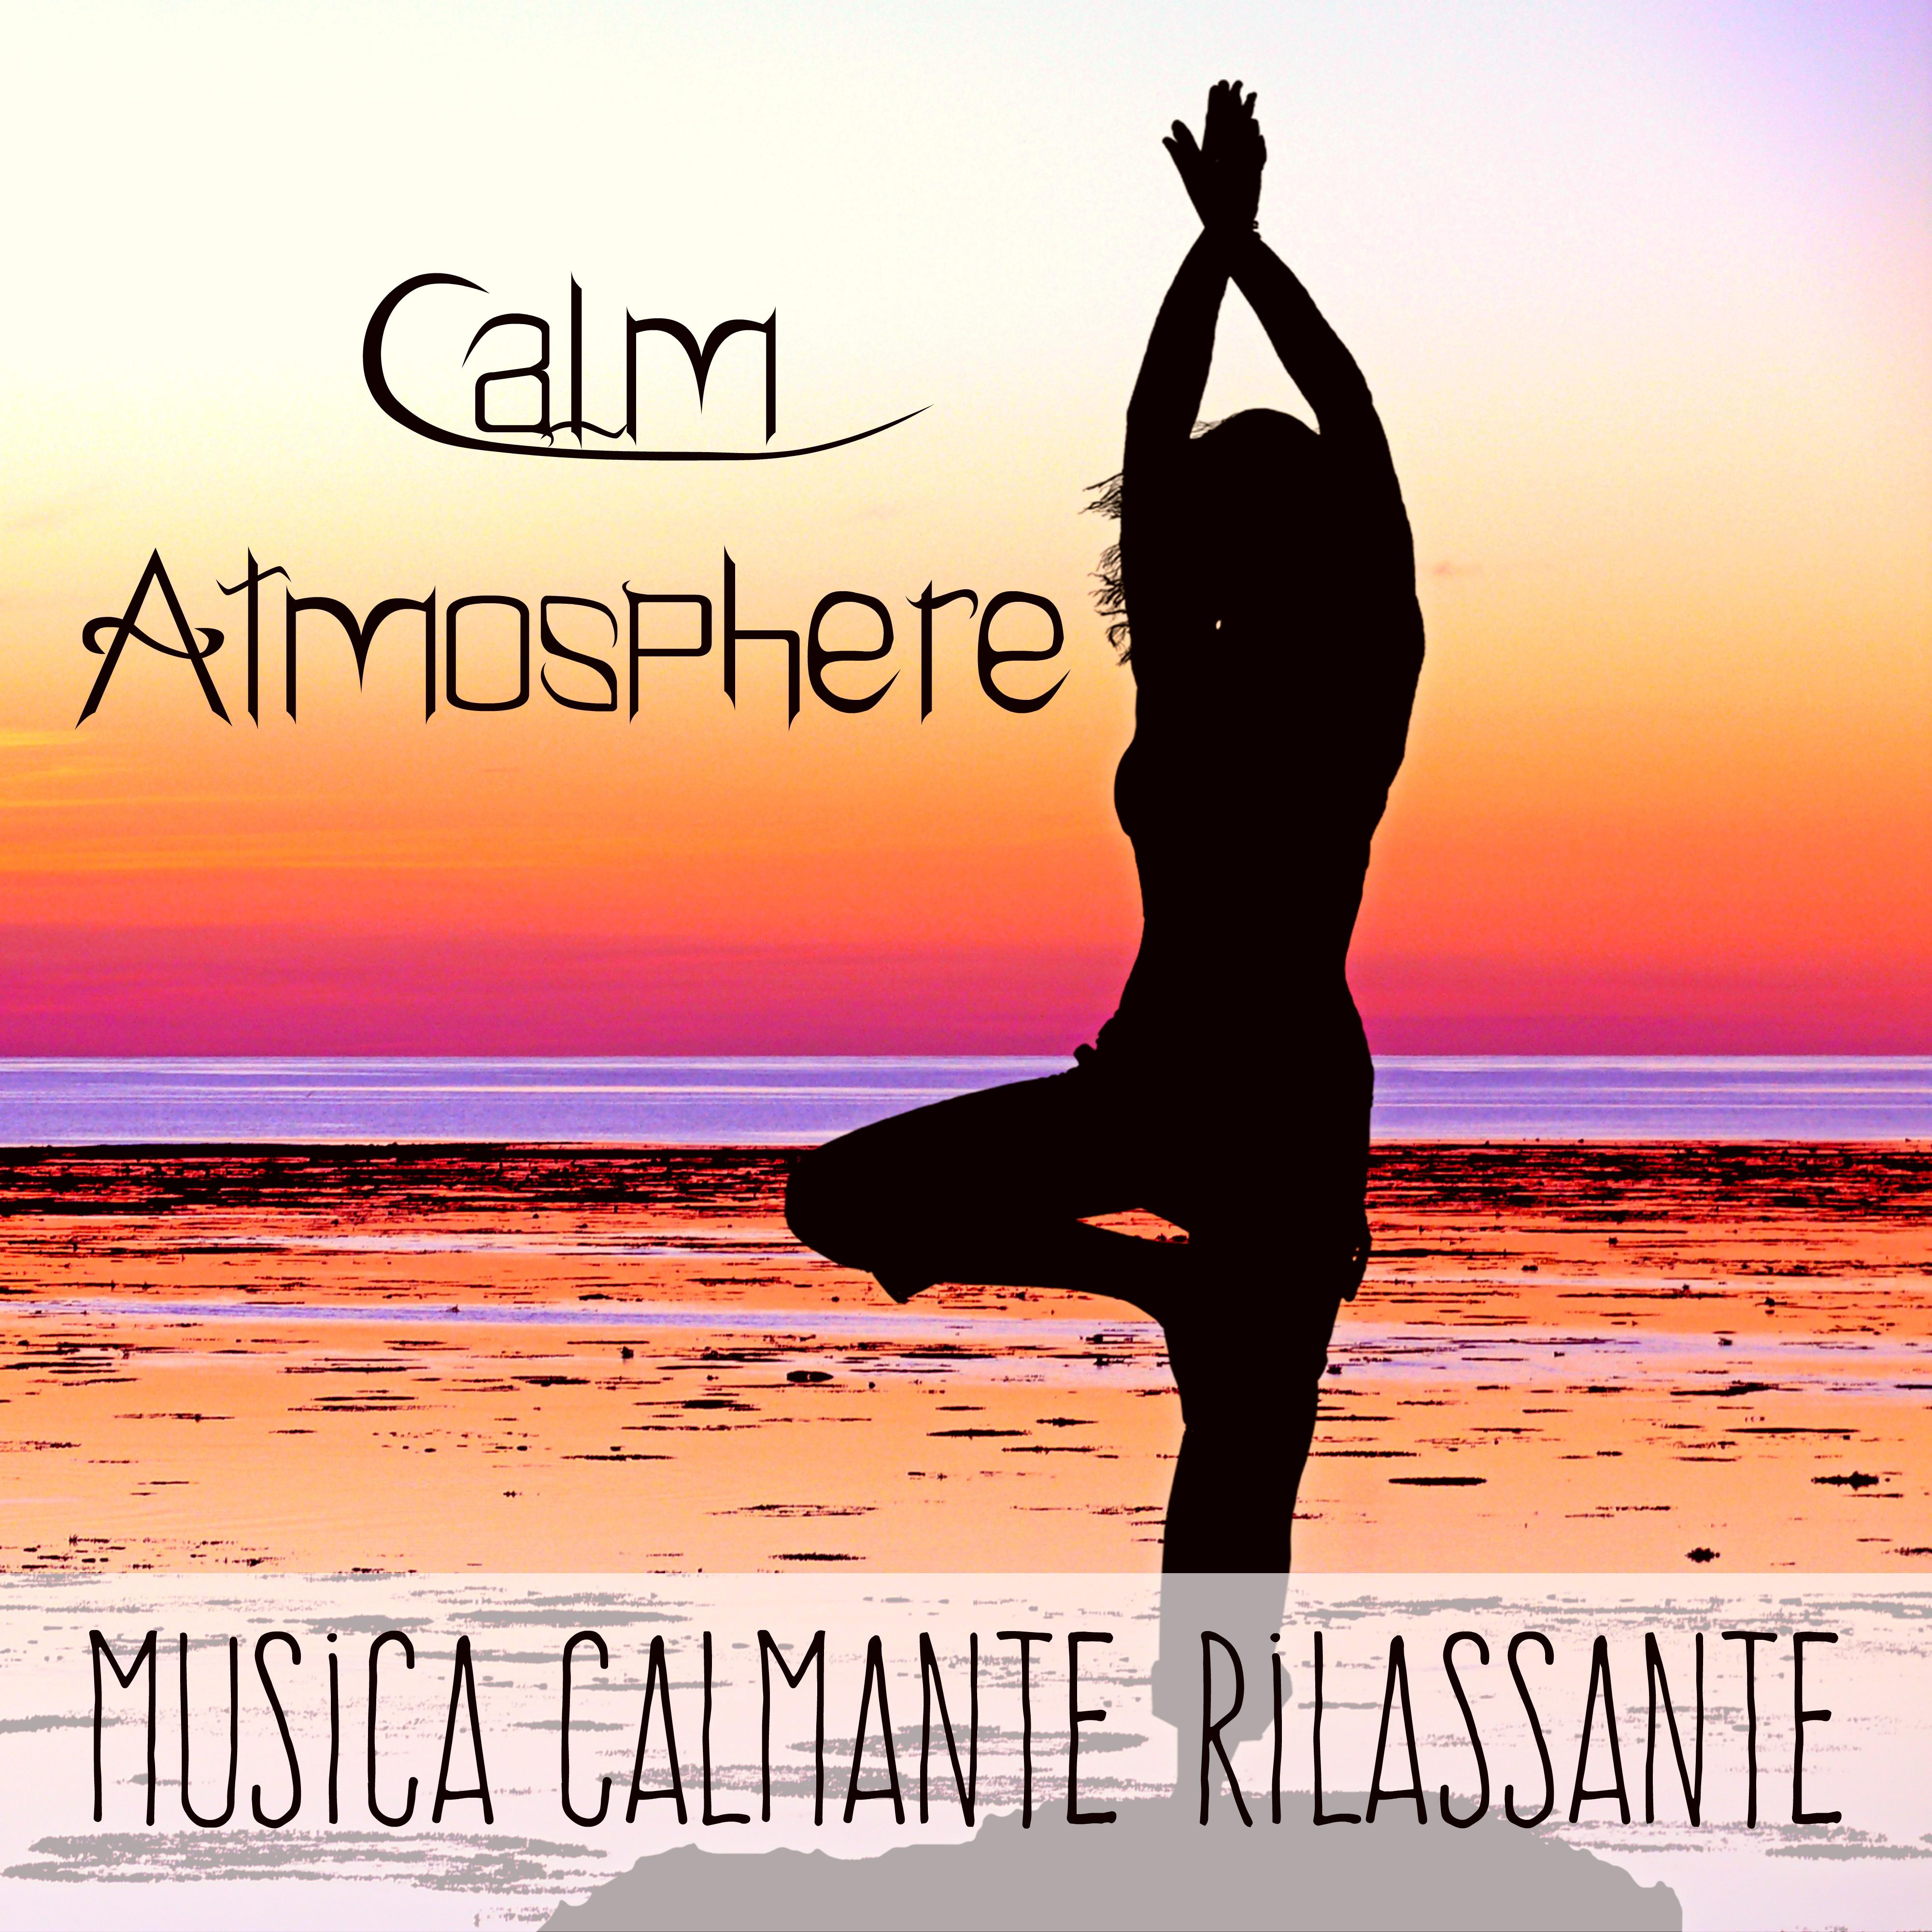 Calm Atmosphere - Musica Calmante Rilassante per Massoterapia Aprire i Chakra Potere della Mente con Suoni della Natura Spirituali Strumentali